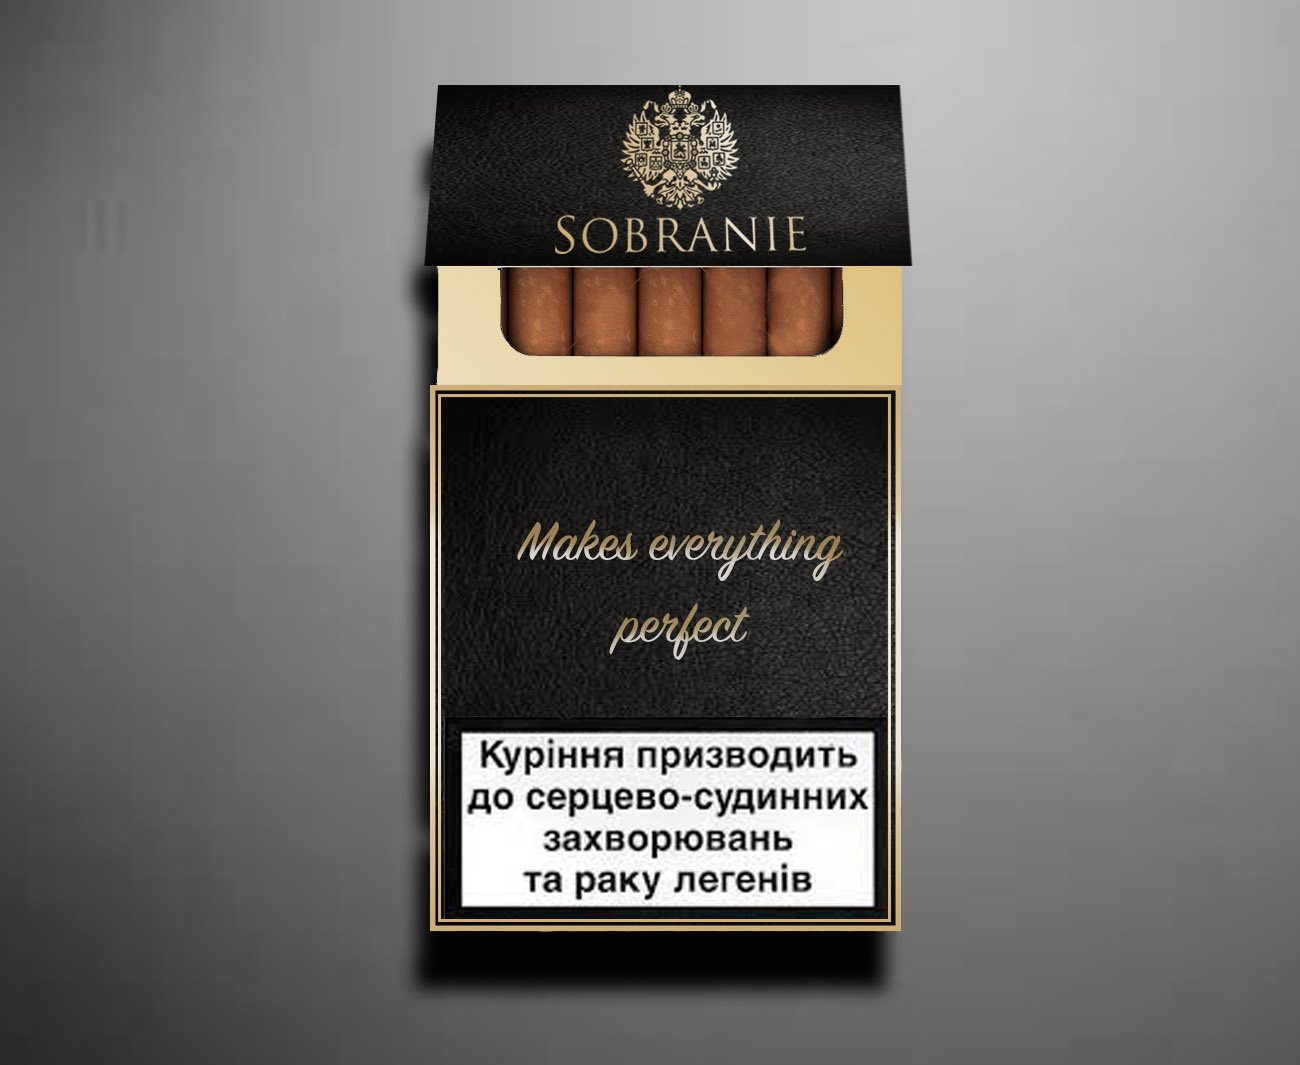 Пачка сигарет шоколадные. Собрание Блэк (Sobranie Black). Sobranie сигареты коричневые. Пачка сигарет дорогих. Дизайнерские сигареты.